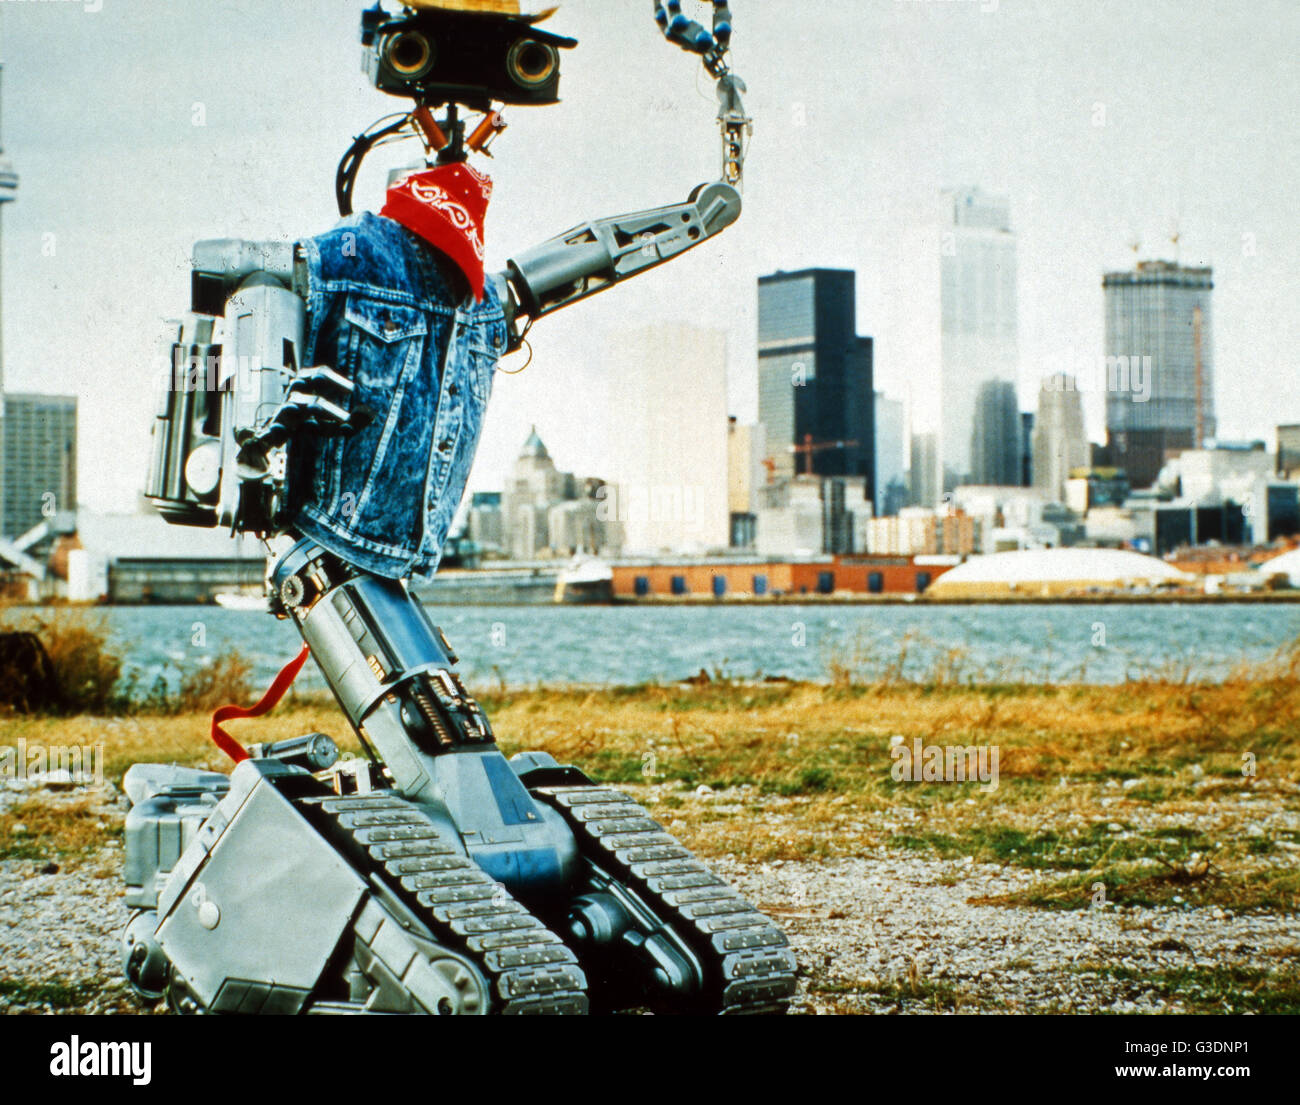 Short Circuit, aka: Nummer 5 lebt!, USA 1986, Regie: John Badham, Roboter Nummer 5 Stock Photo